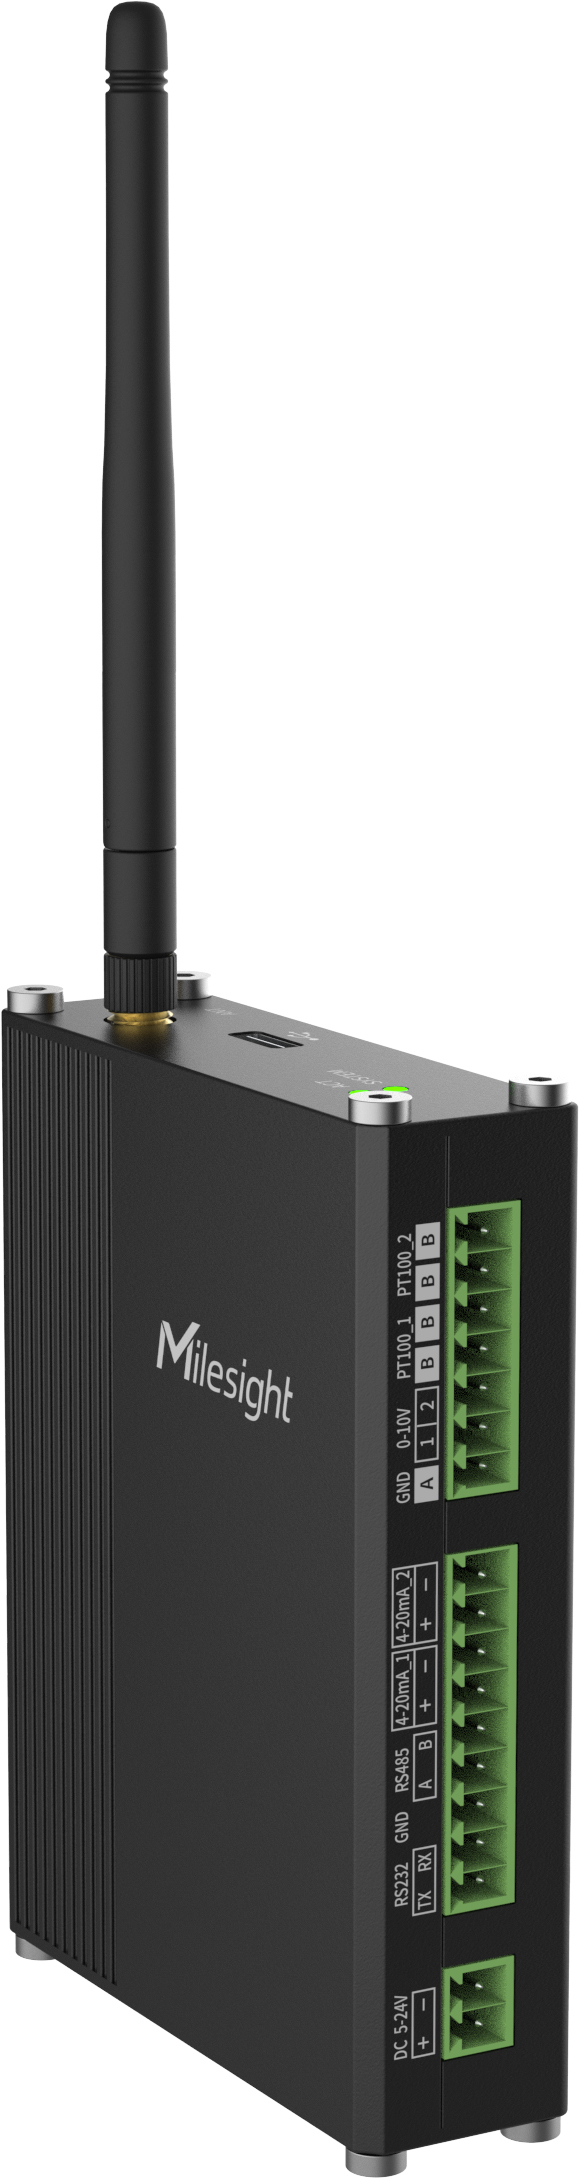 Milesight UC300-L05EU 3G/4G IoT-kontrolleri